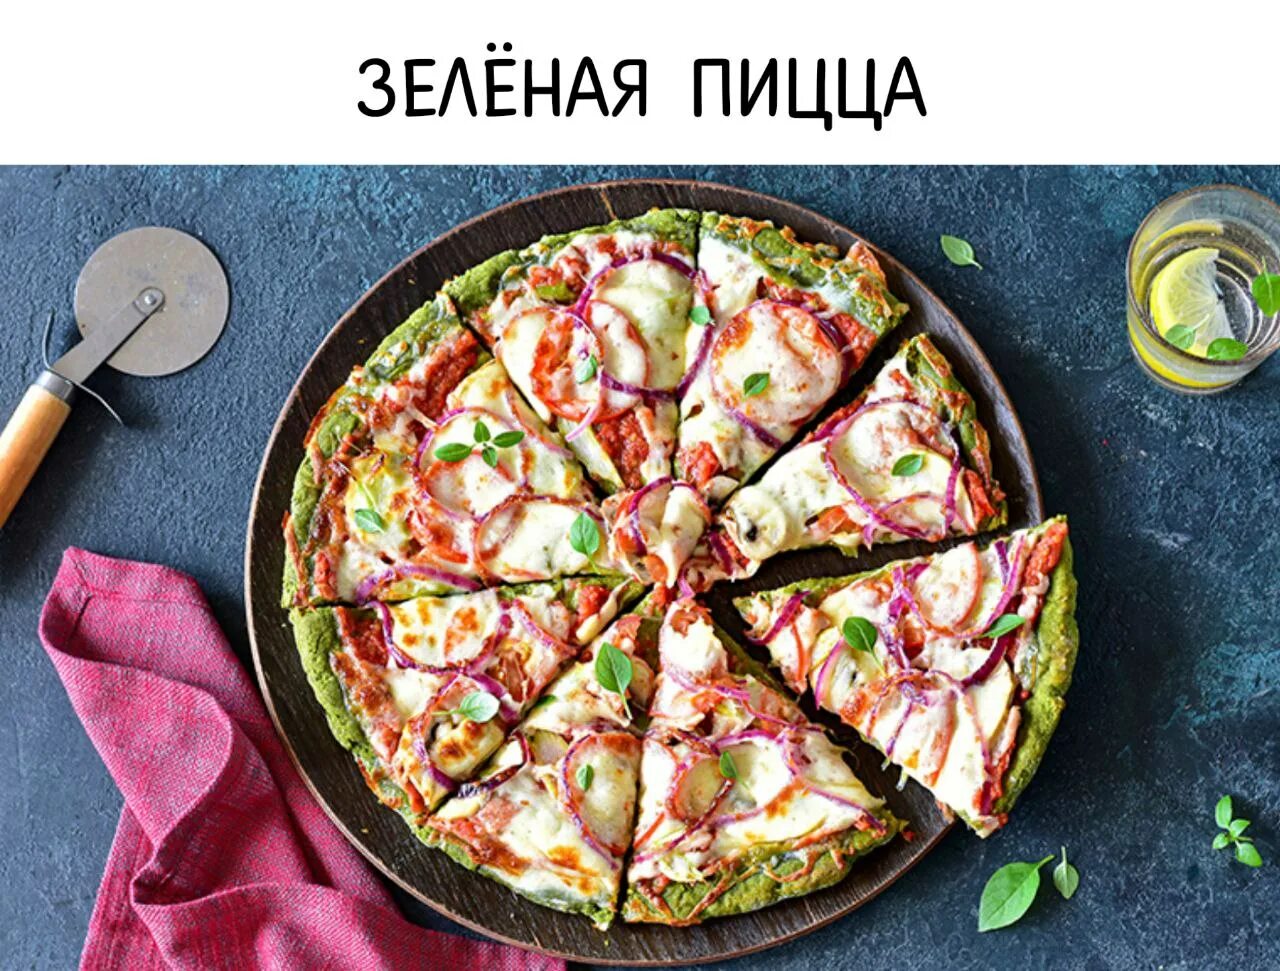 пицца со всеми зелеными начинками фото 1